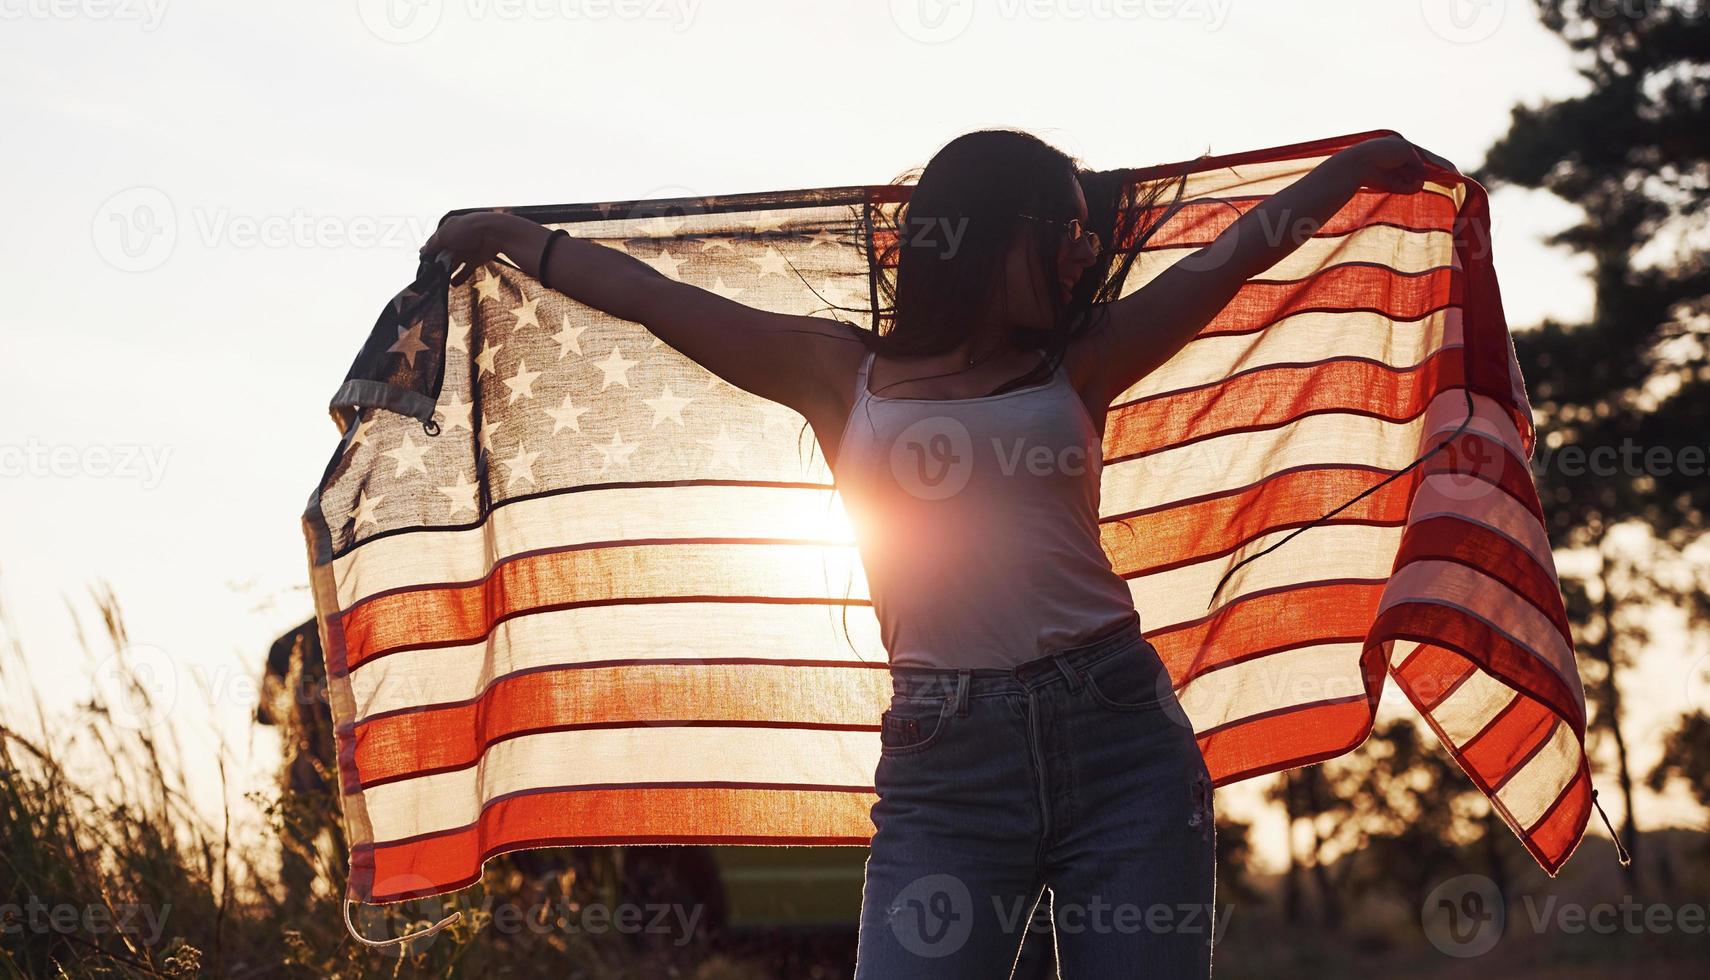 bellissimo luce. brunetta con Stati Uniti d'America bandiera nel mani avere un' bene tempo e si sente la libertà all'aperto a soleggiato giorno foto